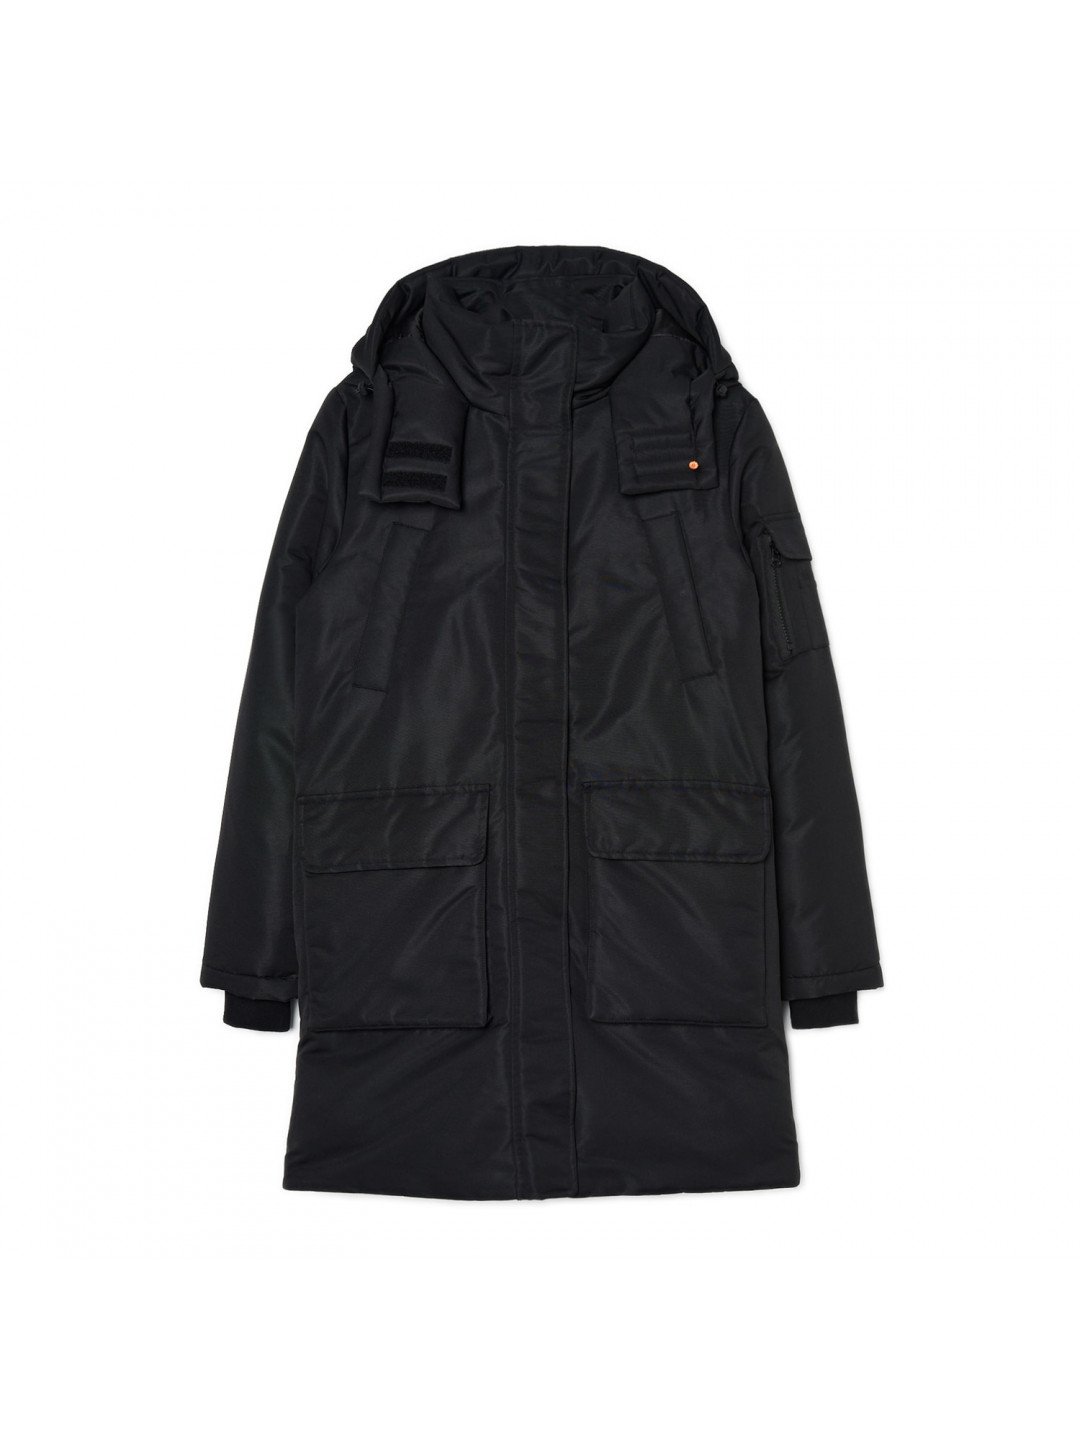 Cropp – Kabát s kapucí – Černý